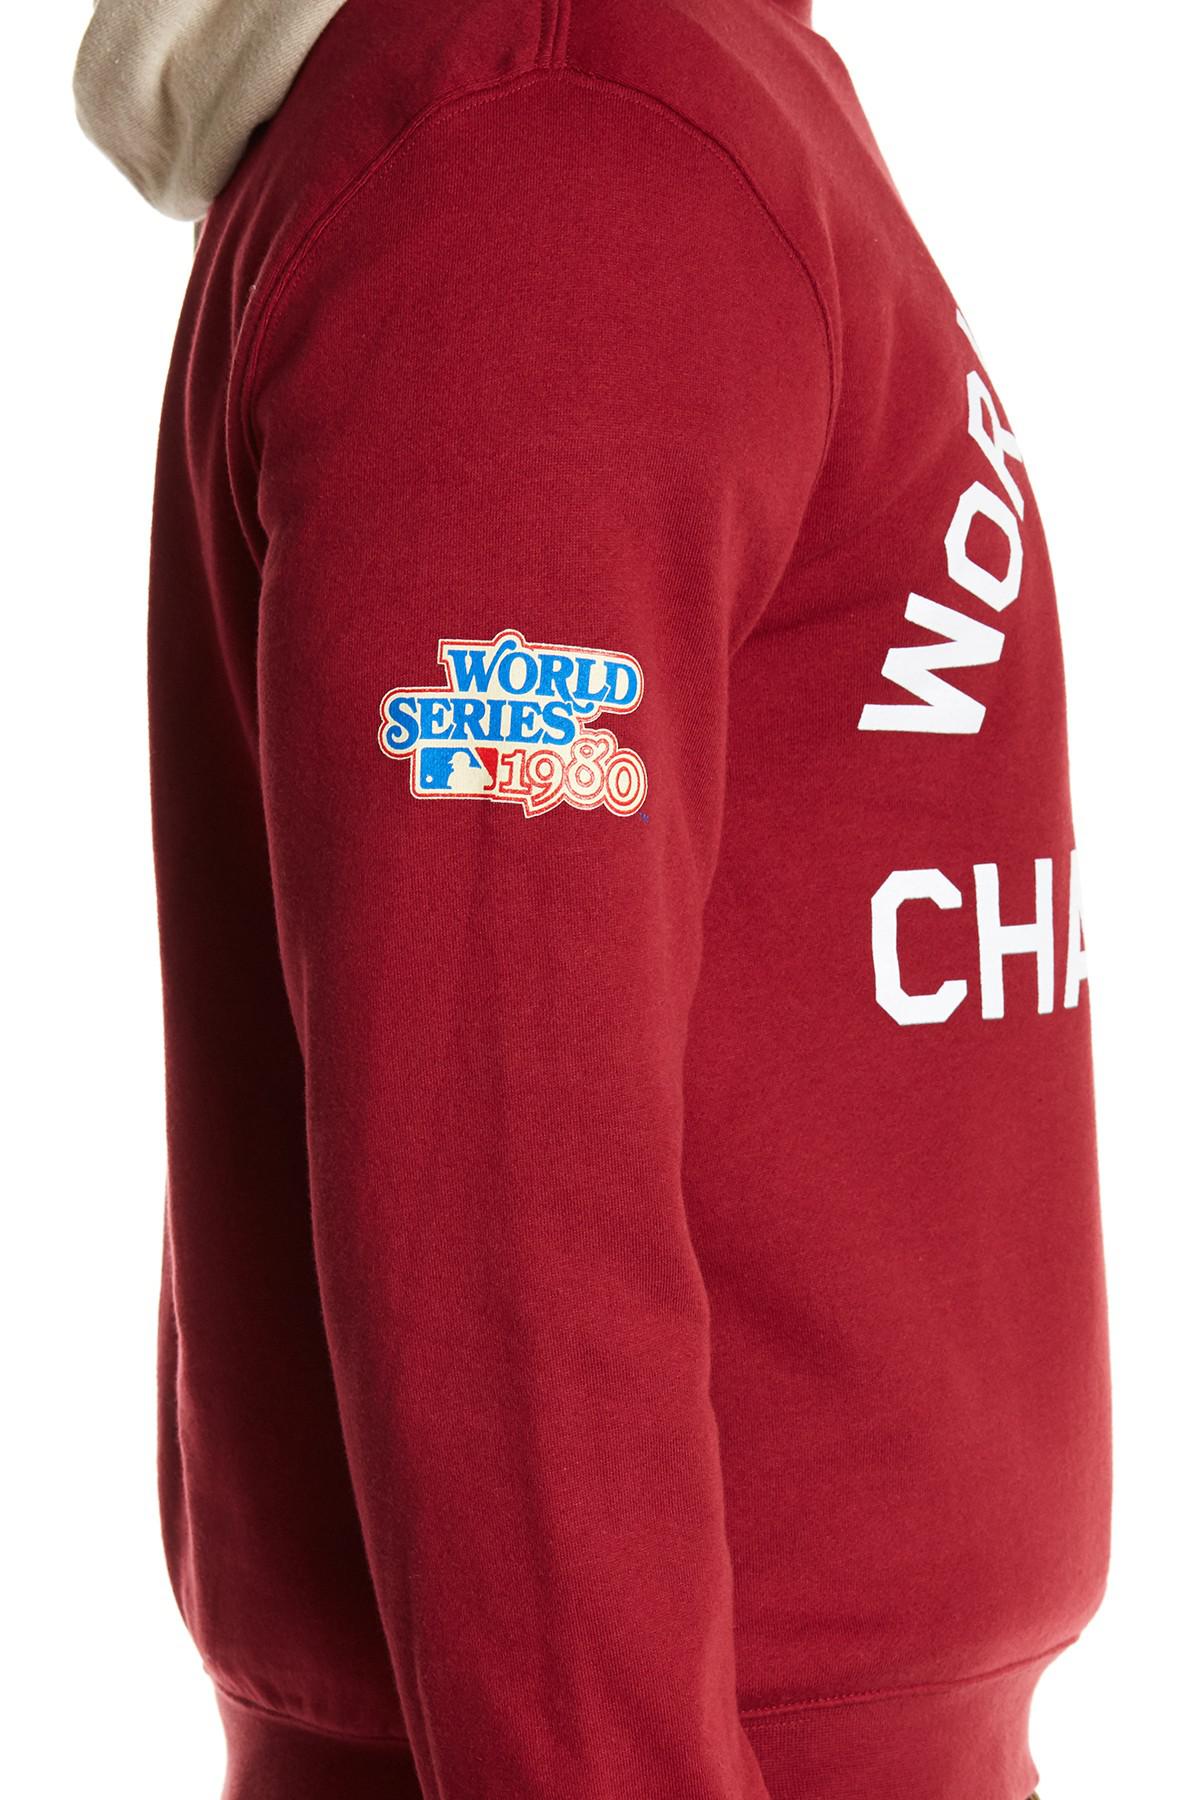 phillies world series sweat shirt